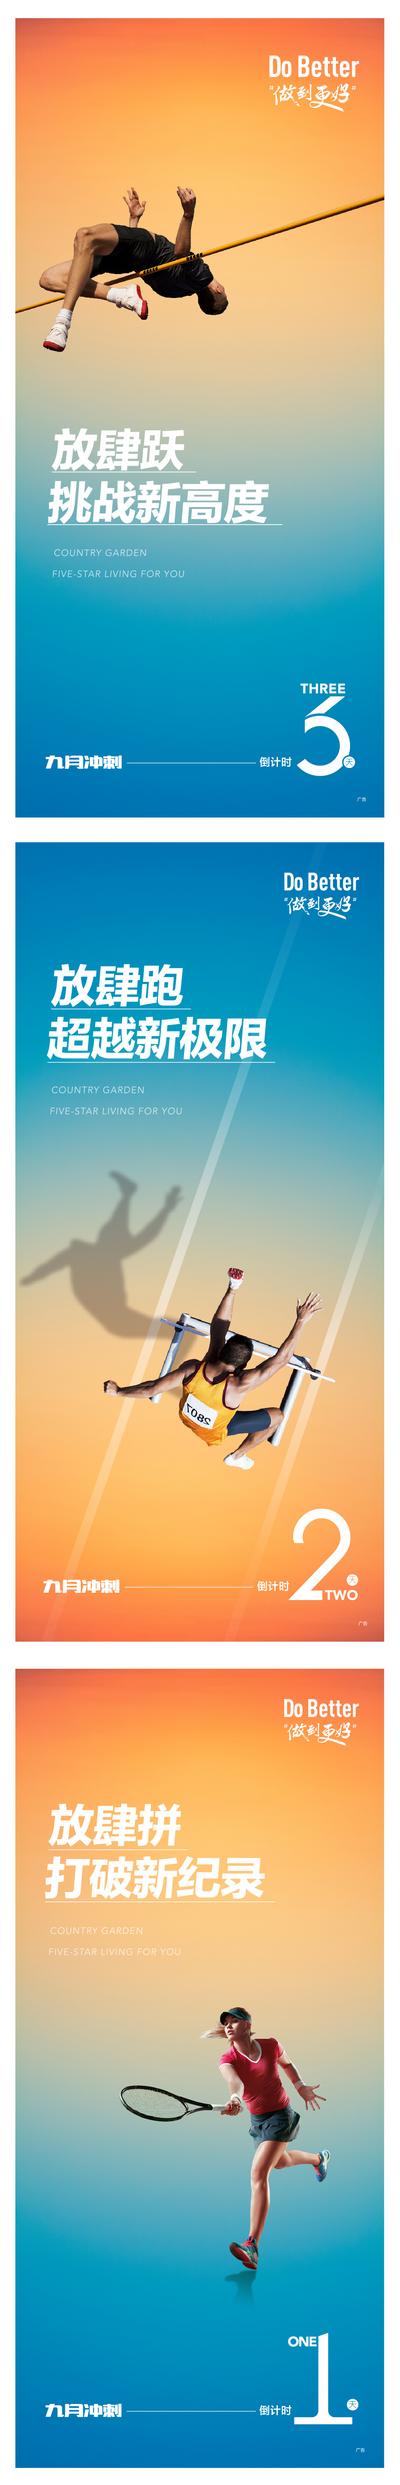 南门网 海报 地产 倒计时  激励 跳高 跑步 跨栏 网球 炫彩   时尚